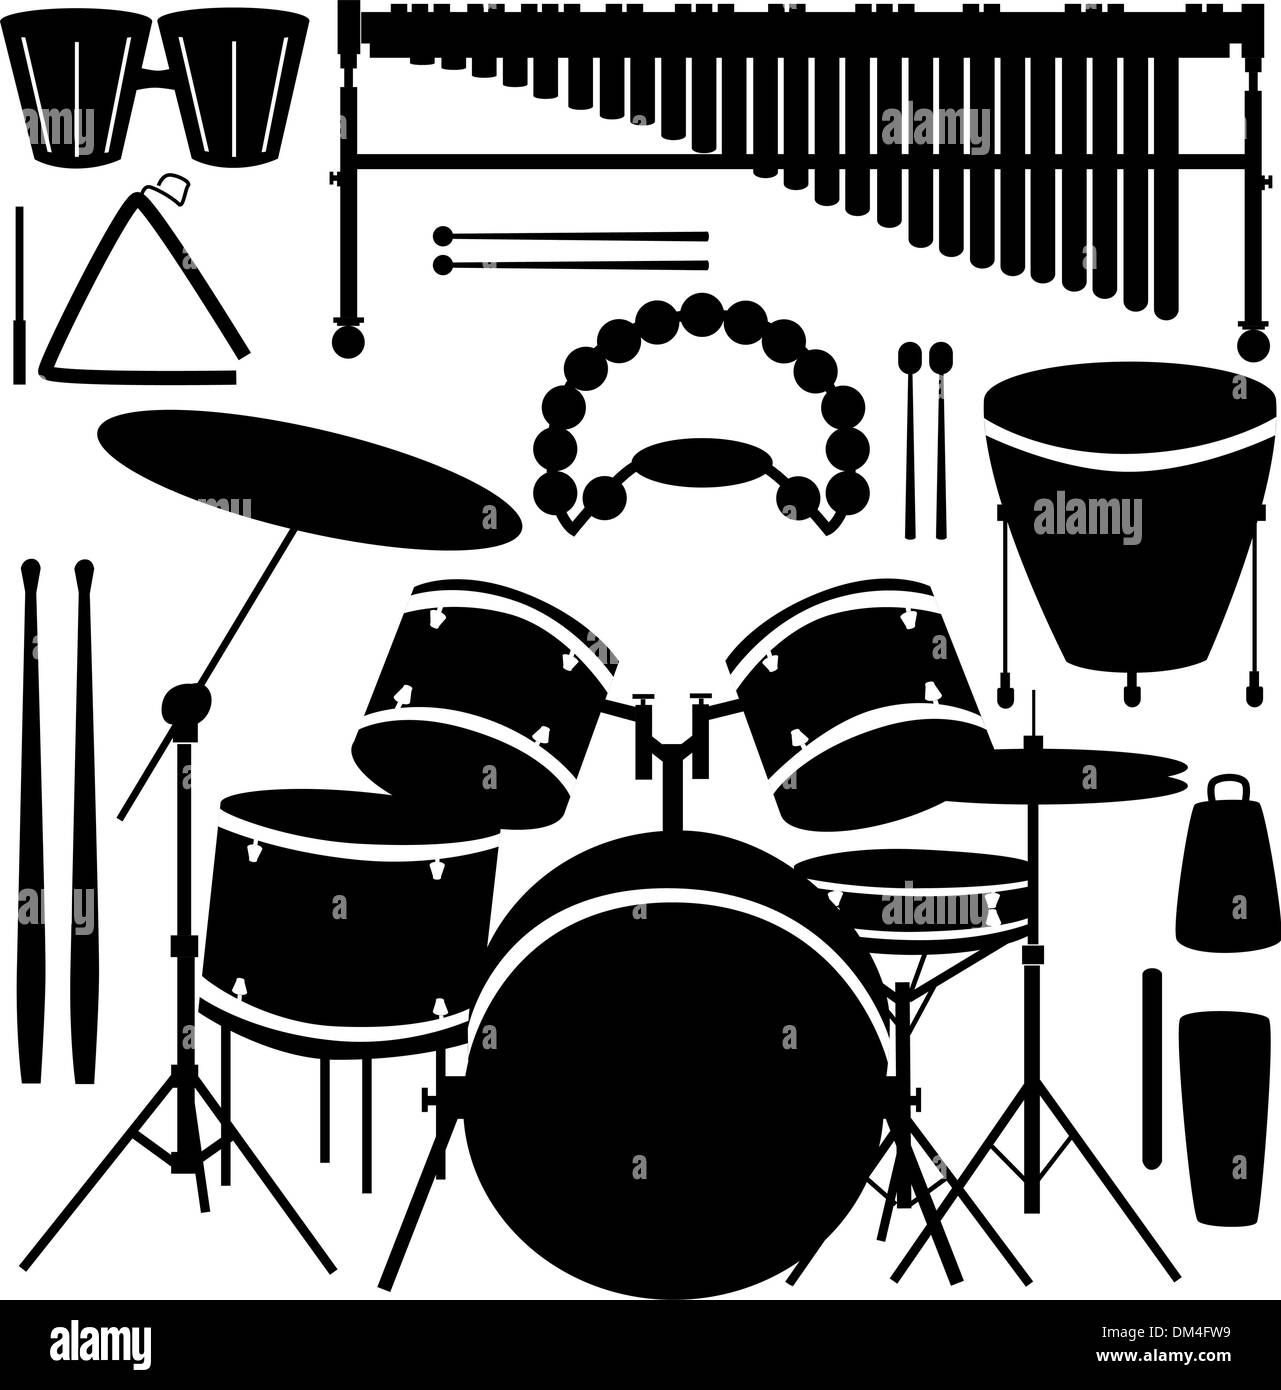 Orchestre de percussions Banque d'images noir et blanc - Alamy